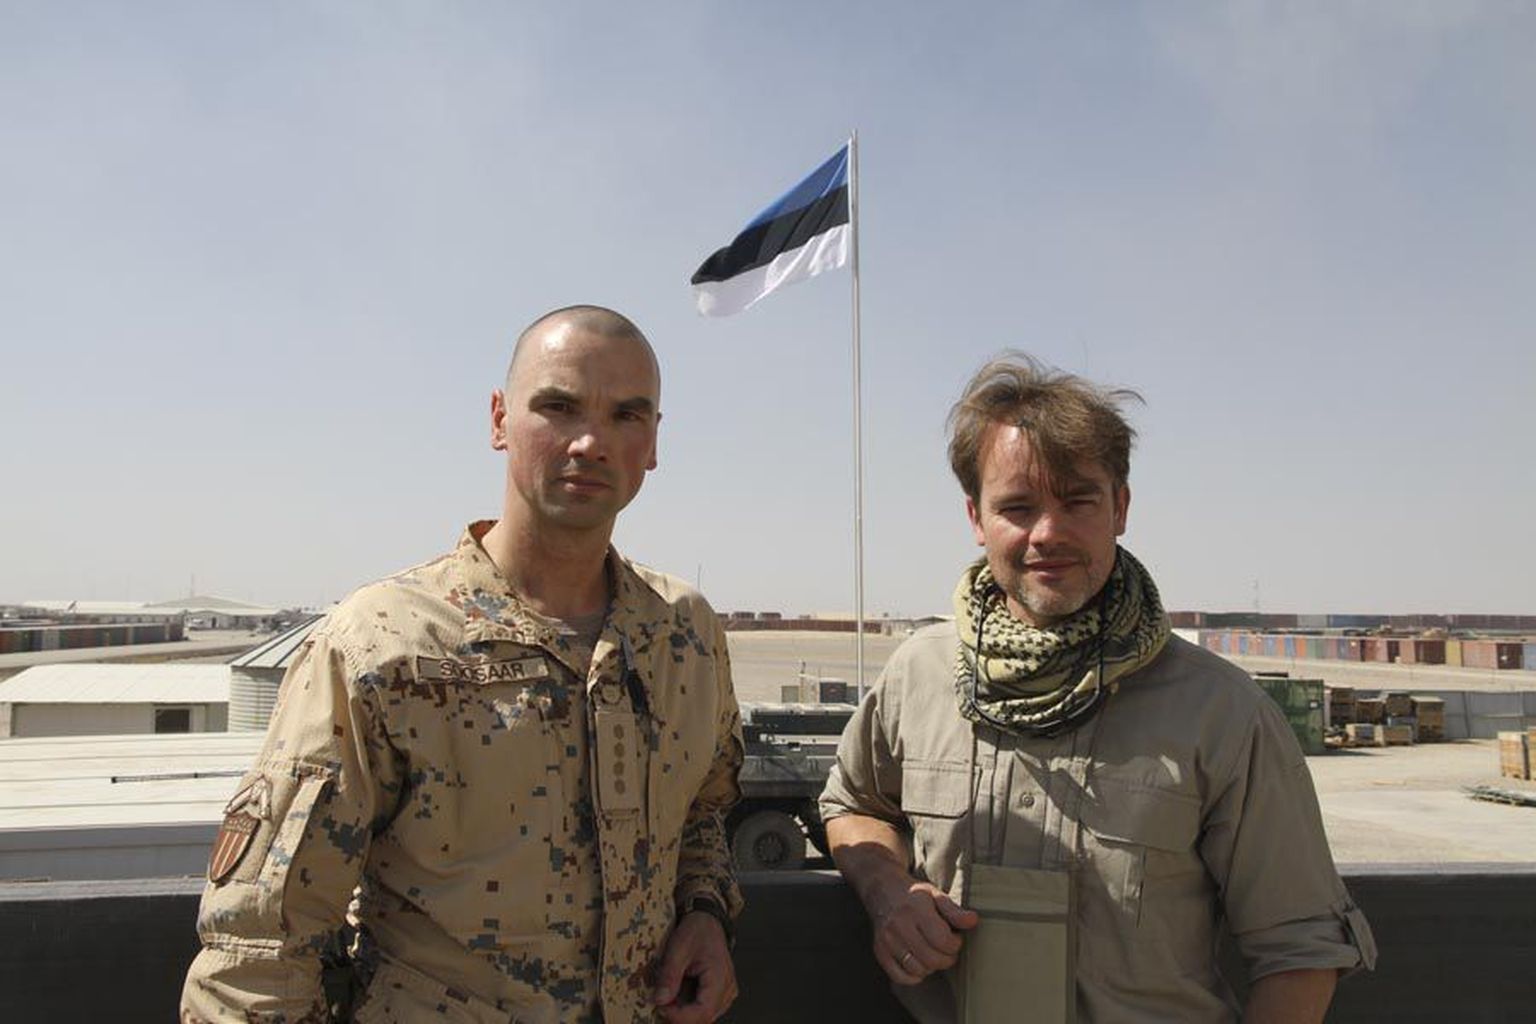 Vasakult: Meelis ja Vahur Soosaar oktoobris Helmandi provintsis Camp Bastionis